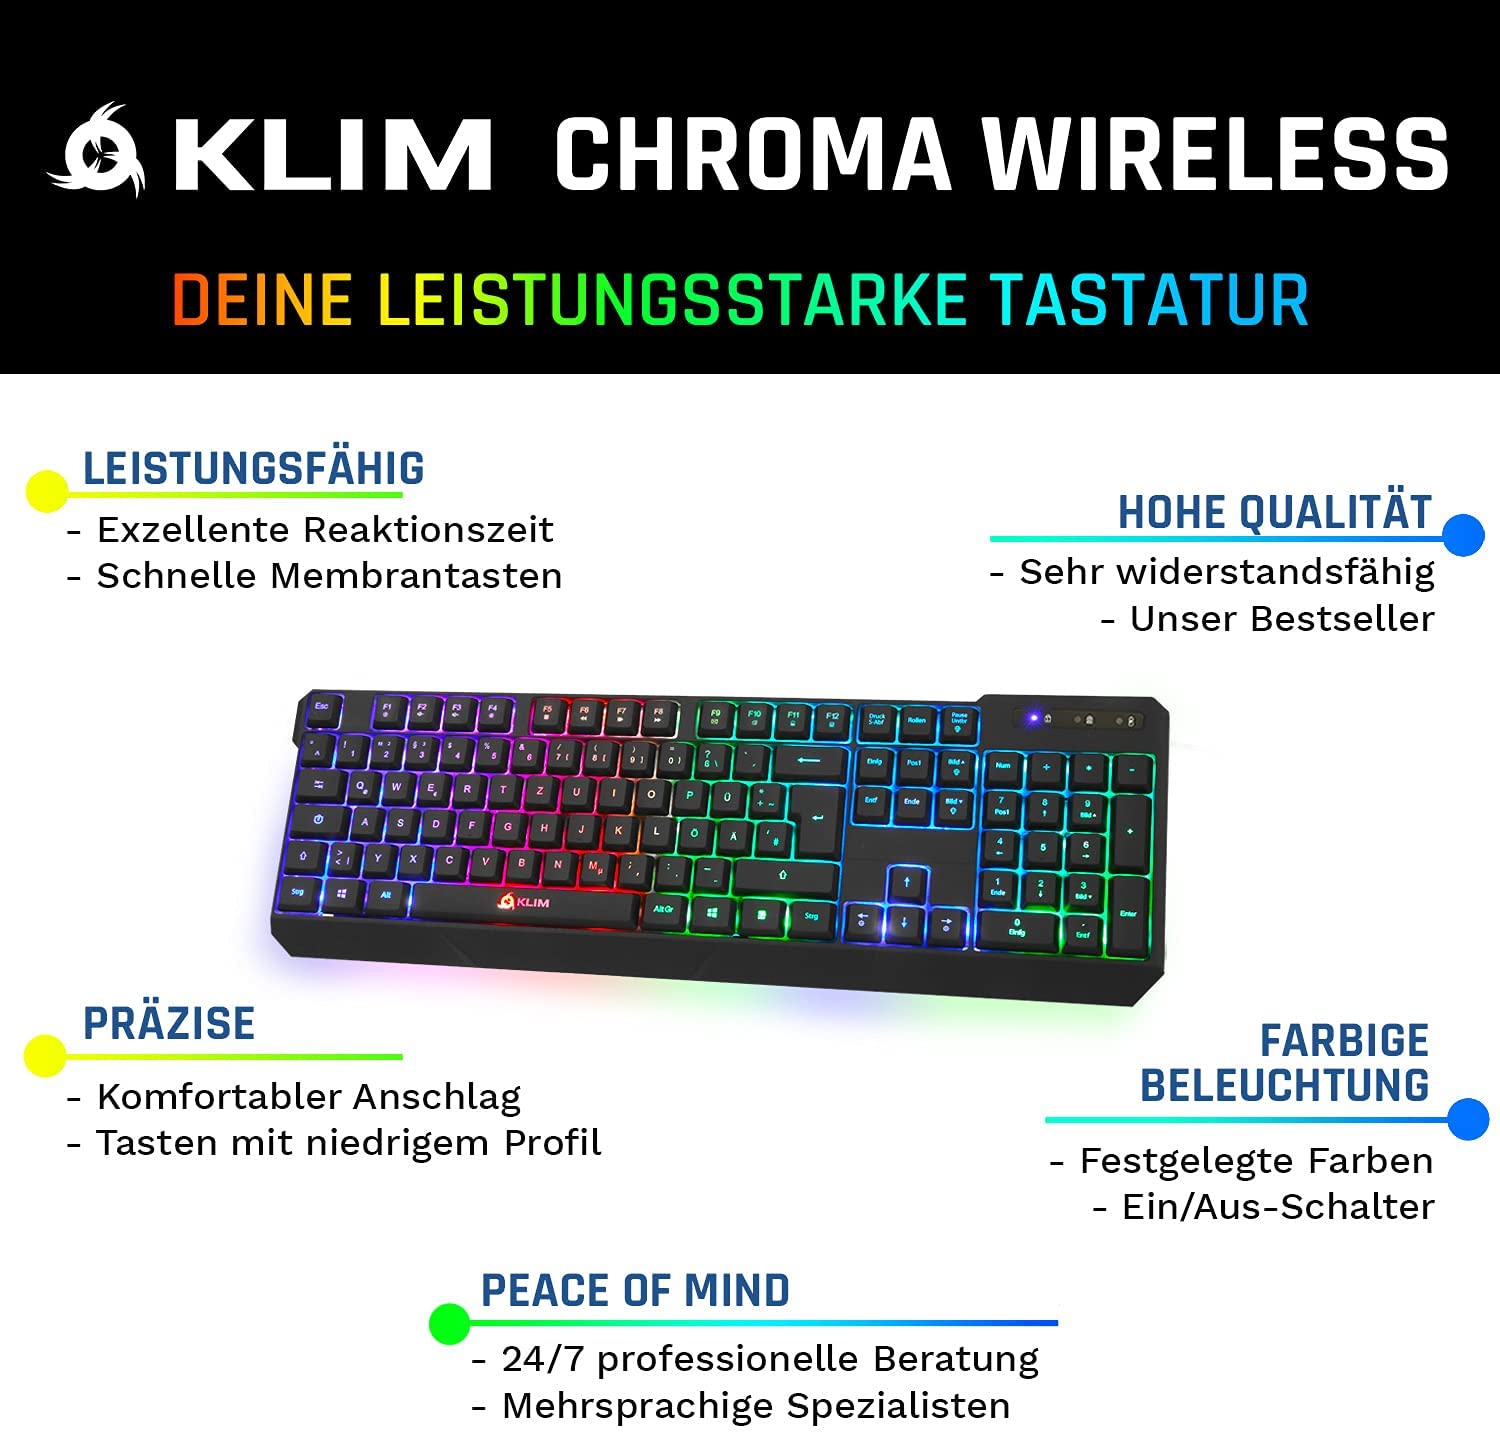 KLIM Chroma kabellose Gaming Tastatur